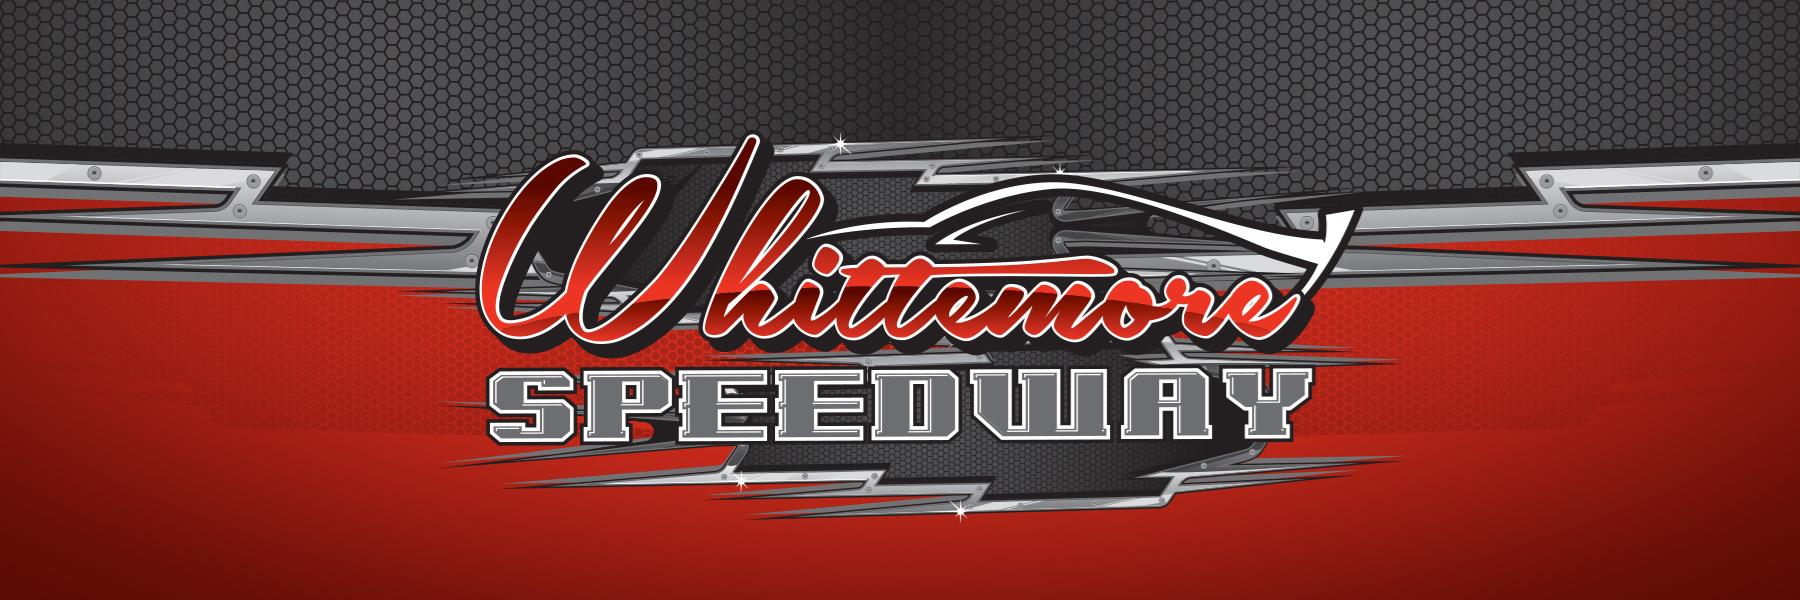 9/4/2021 - Whittemore Speedway